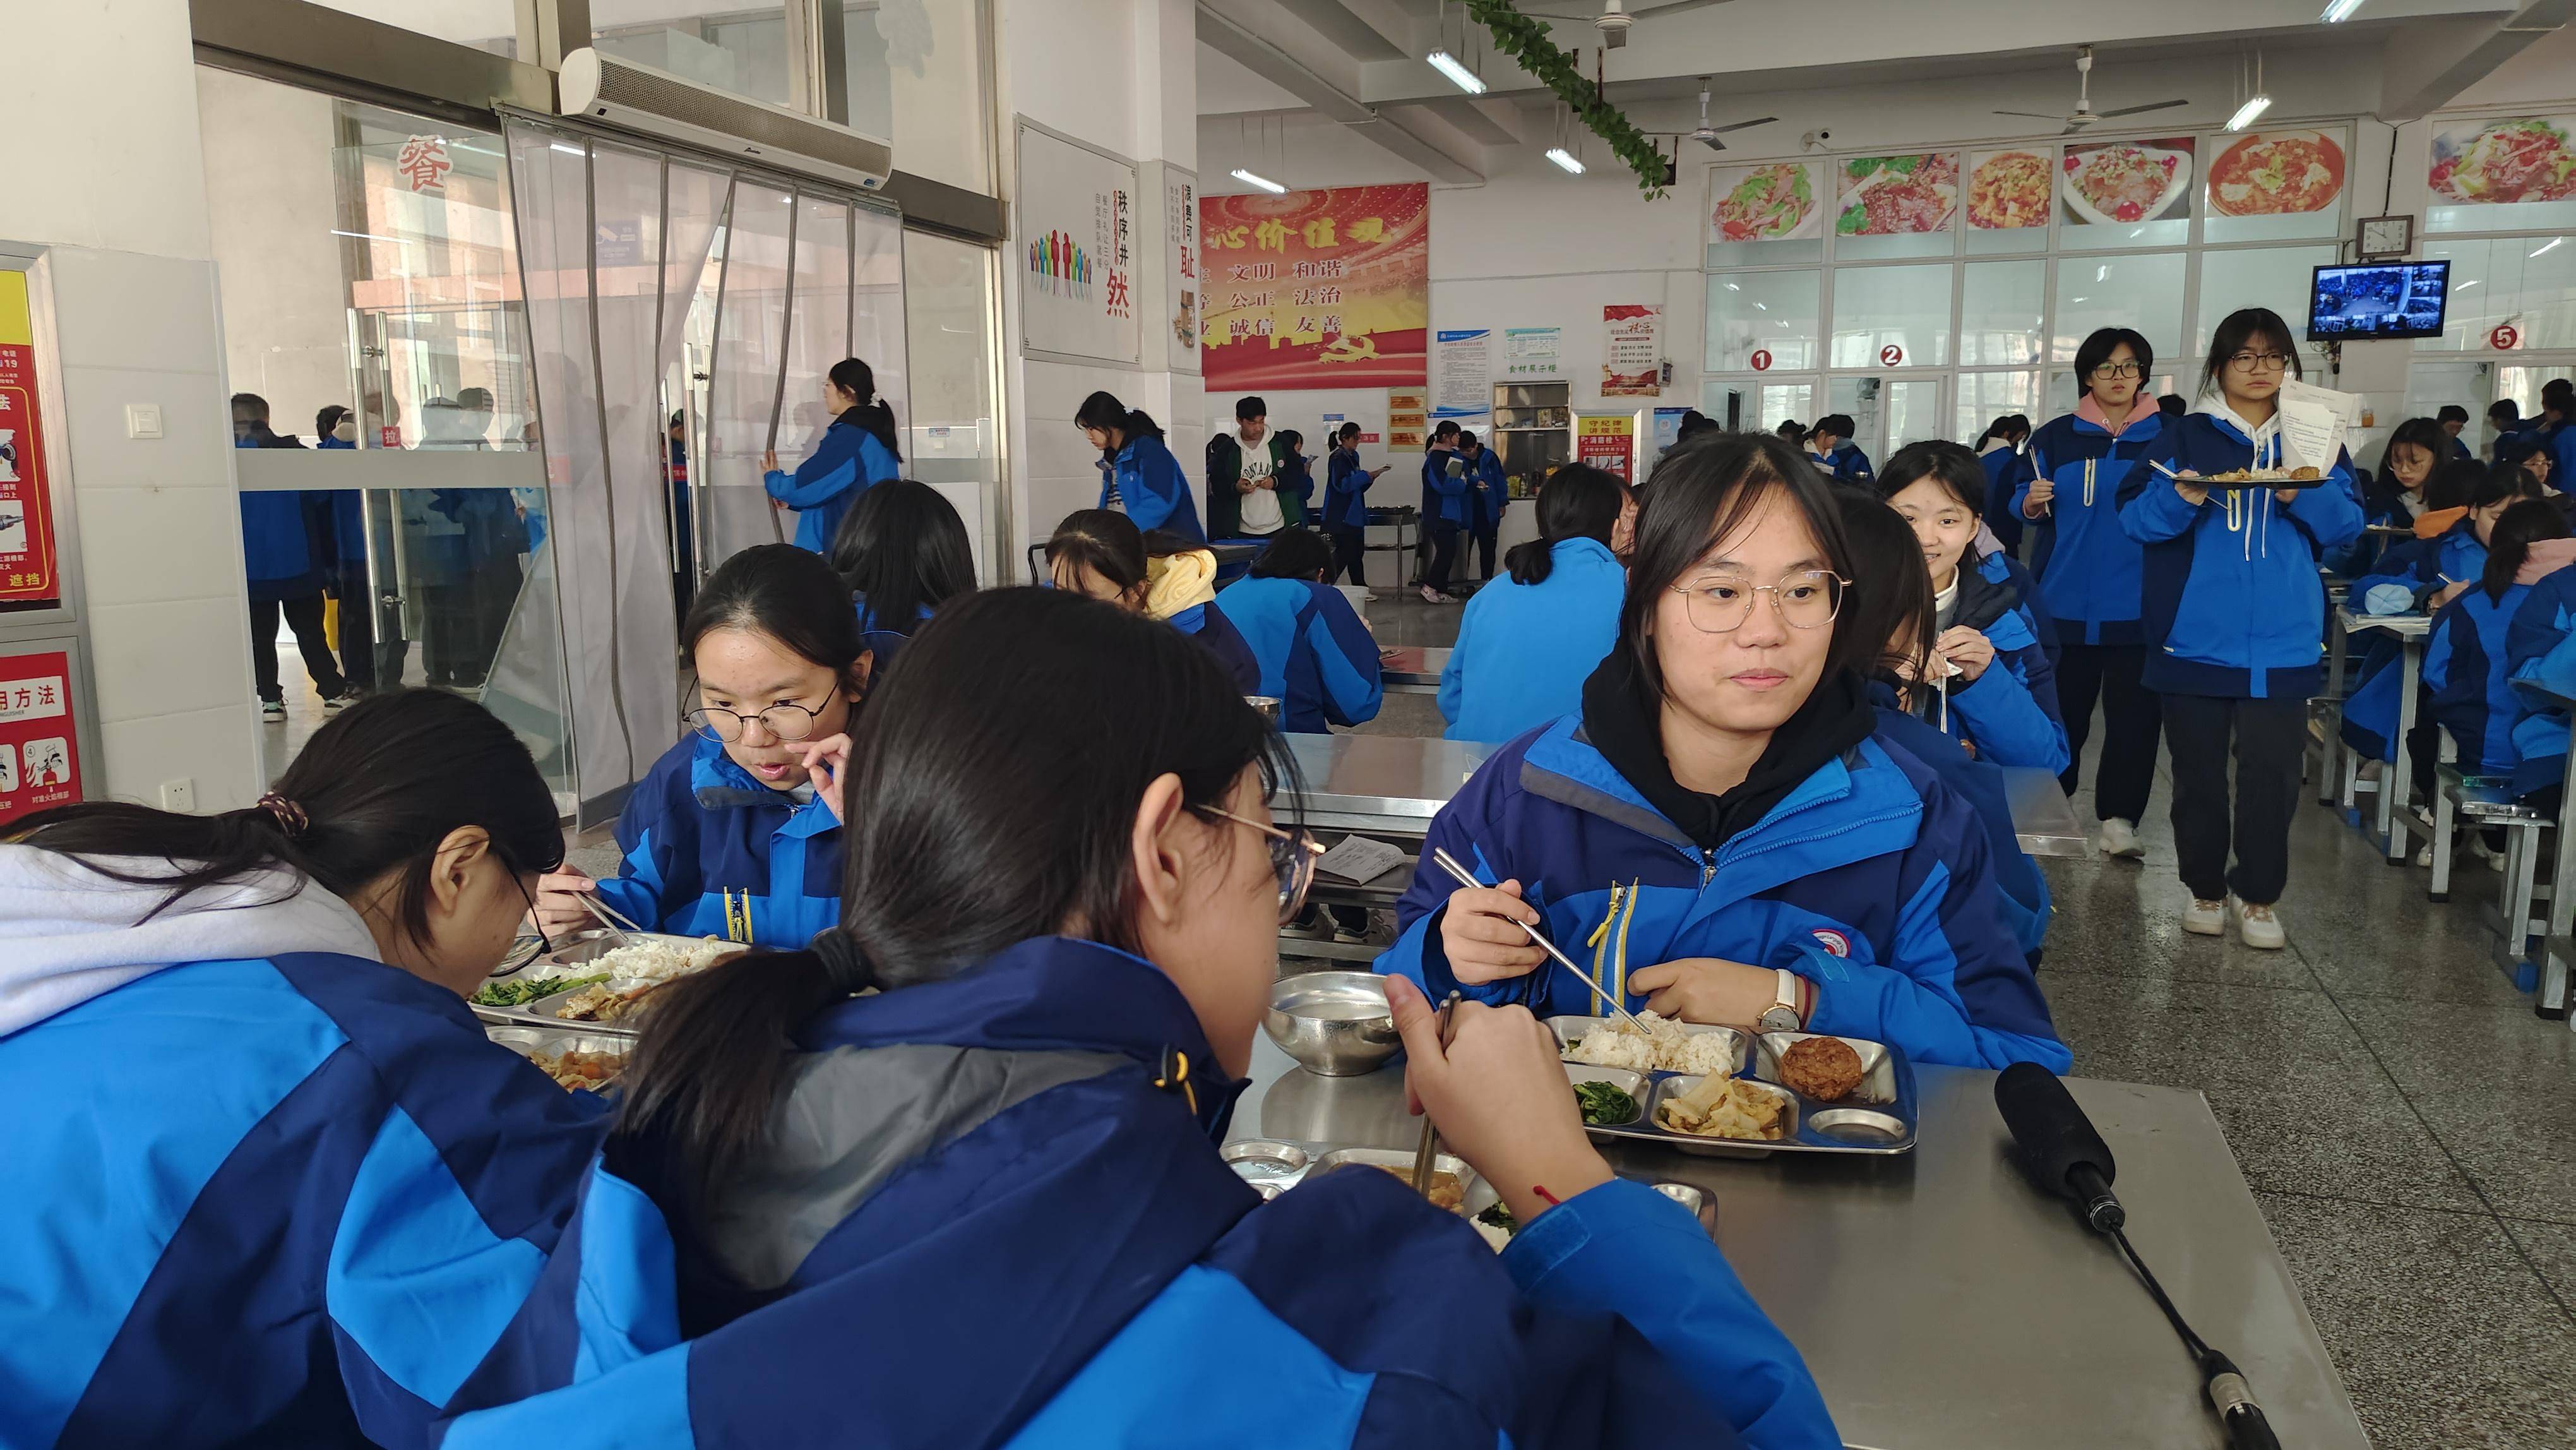 丨滁州儒林外国语学校舌尖上的安全我们共同守护